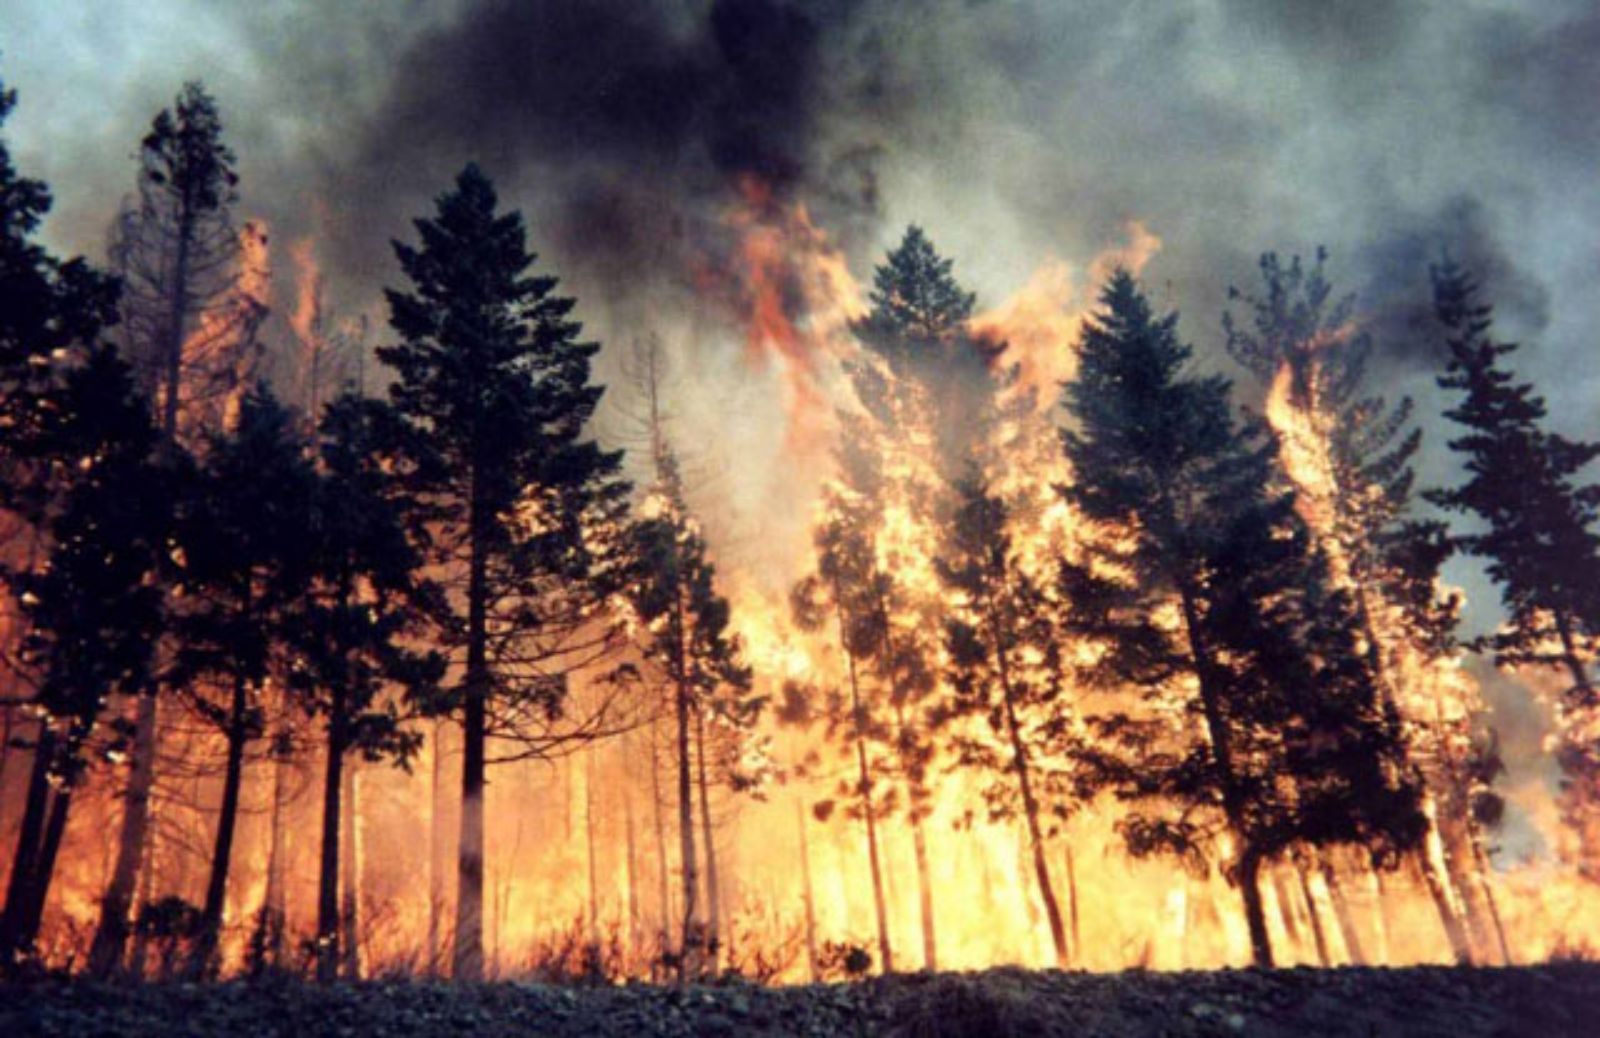 Le 5 cose da fare in caso di incendio nel bosco